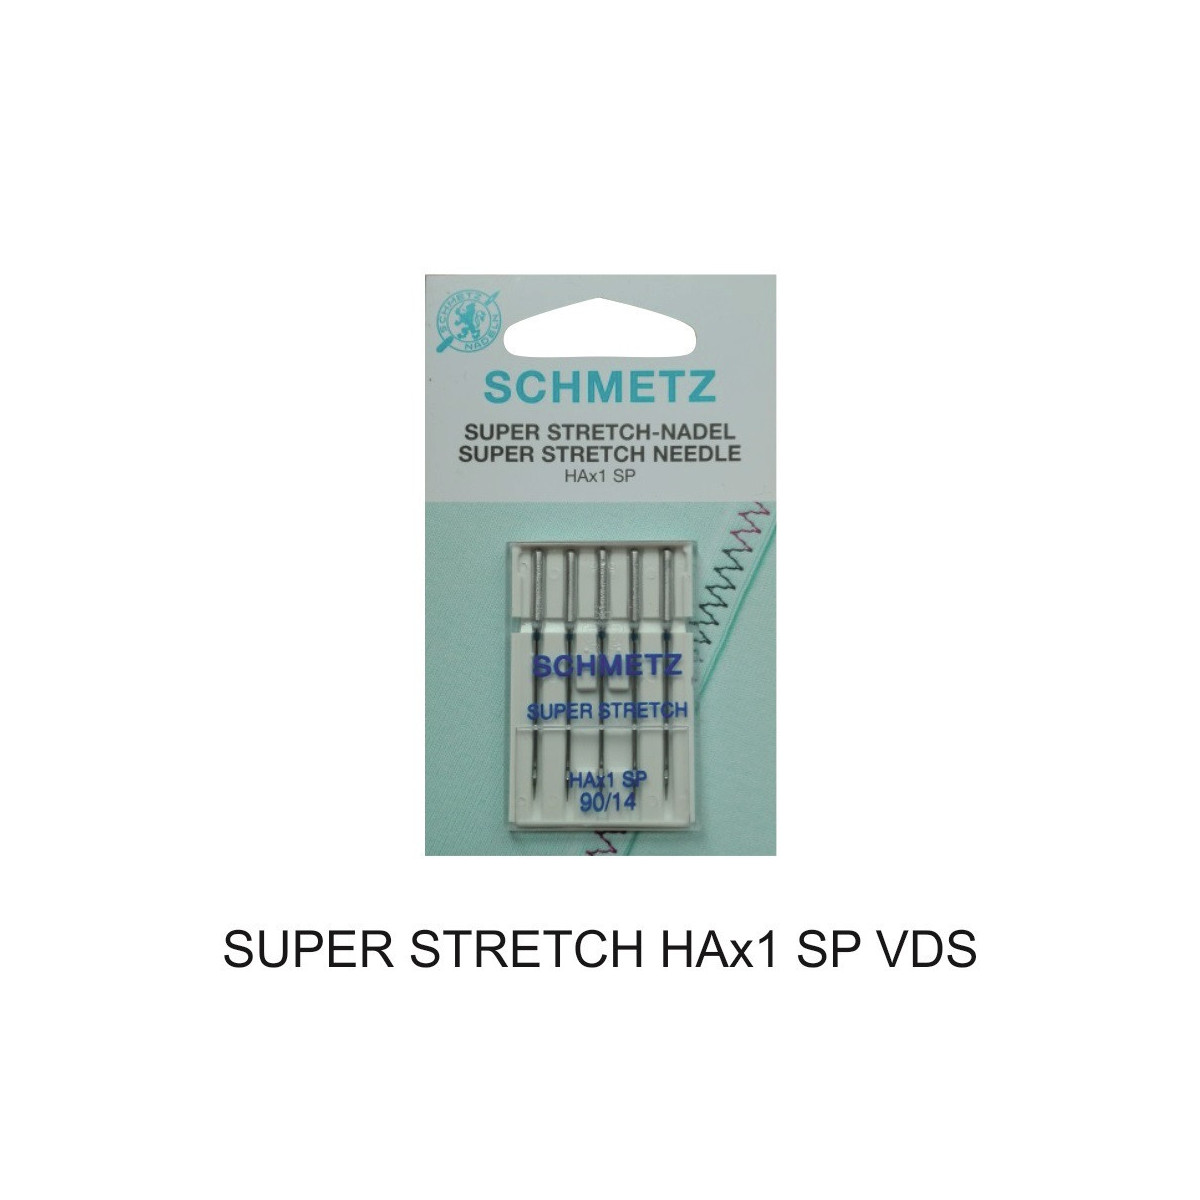 SUPER STRETCH HAx1 SP VDS - Igły do maszyn domowych